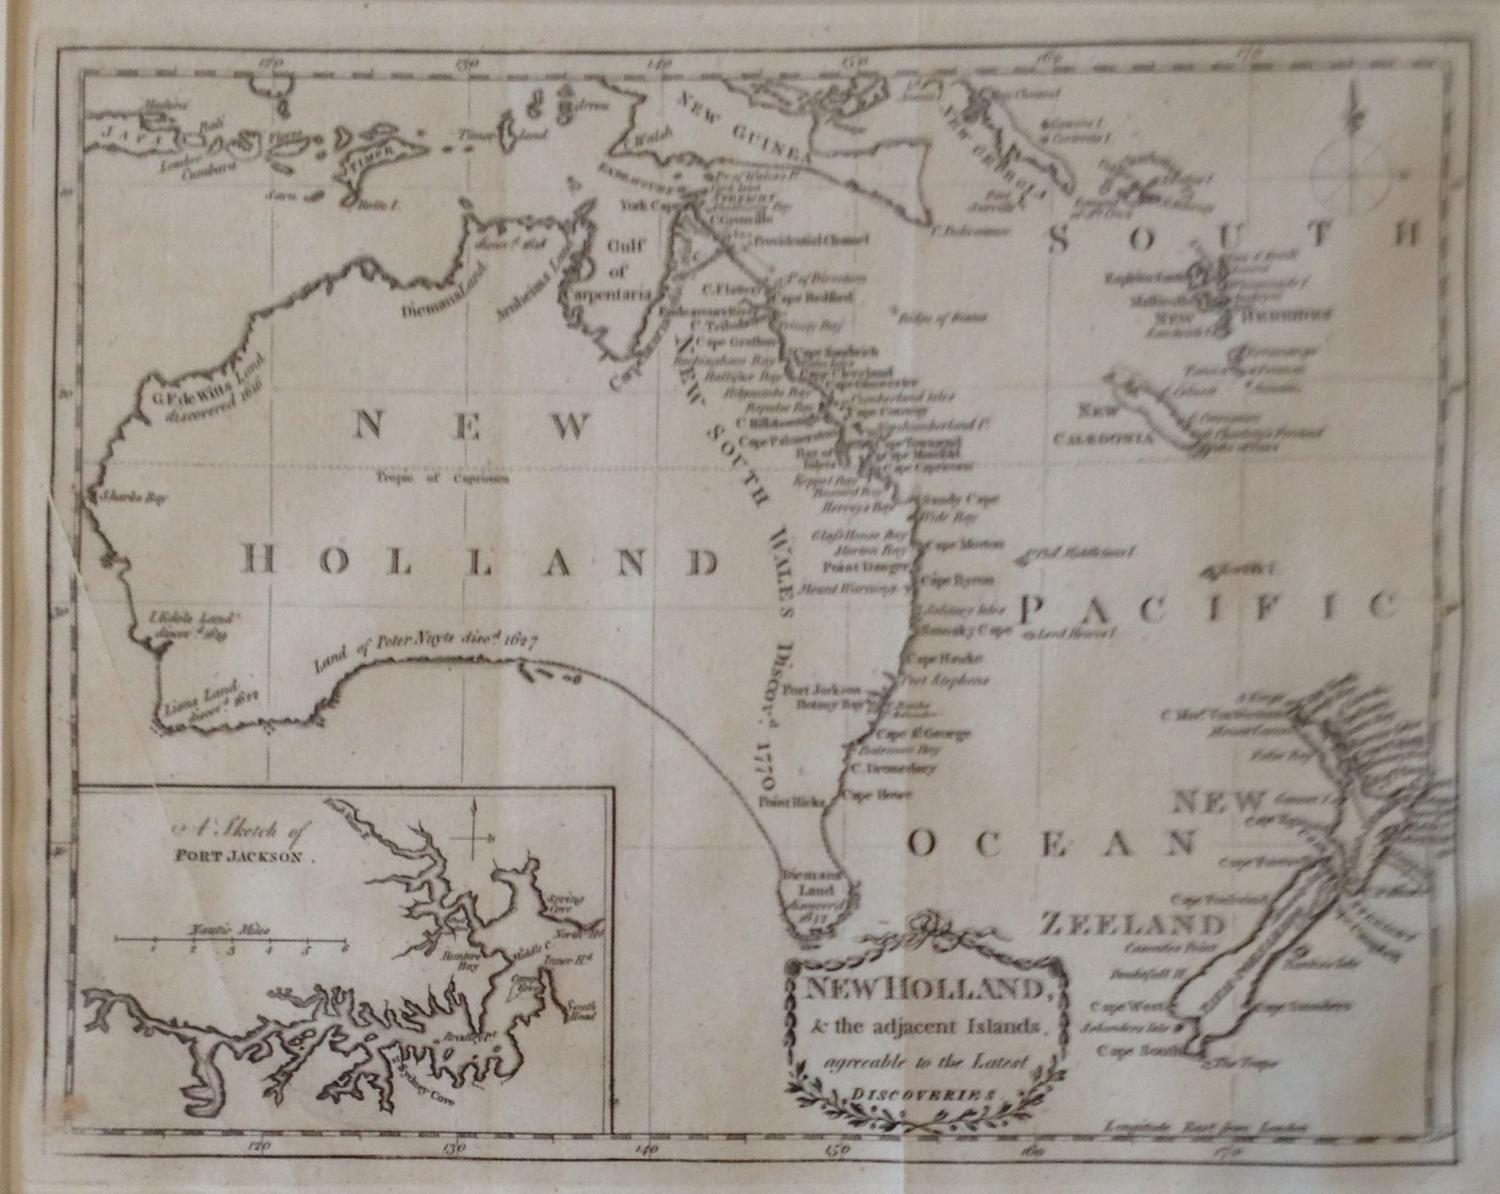 Kincaid - New Holland & the adjacent Islands